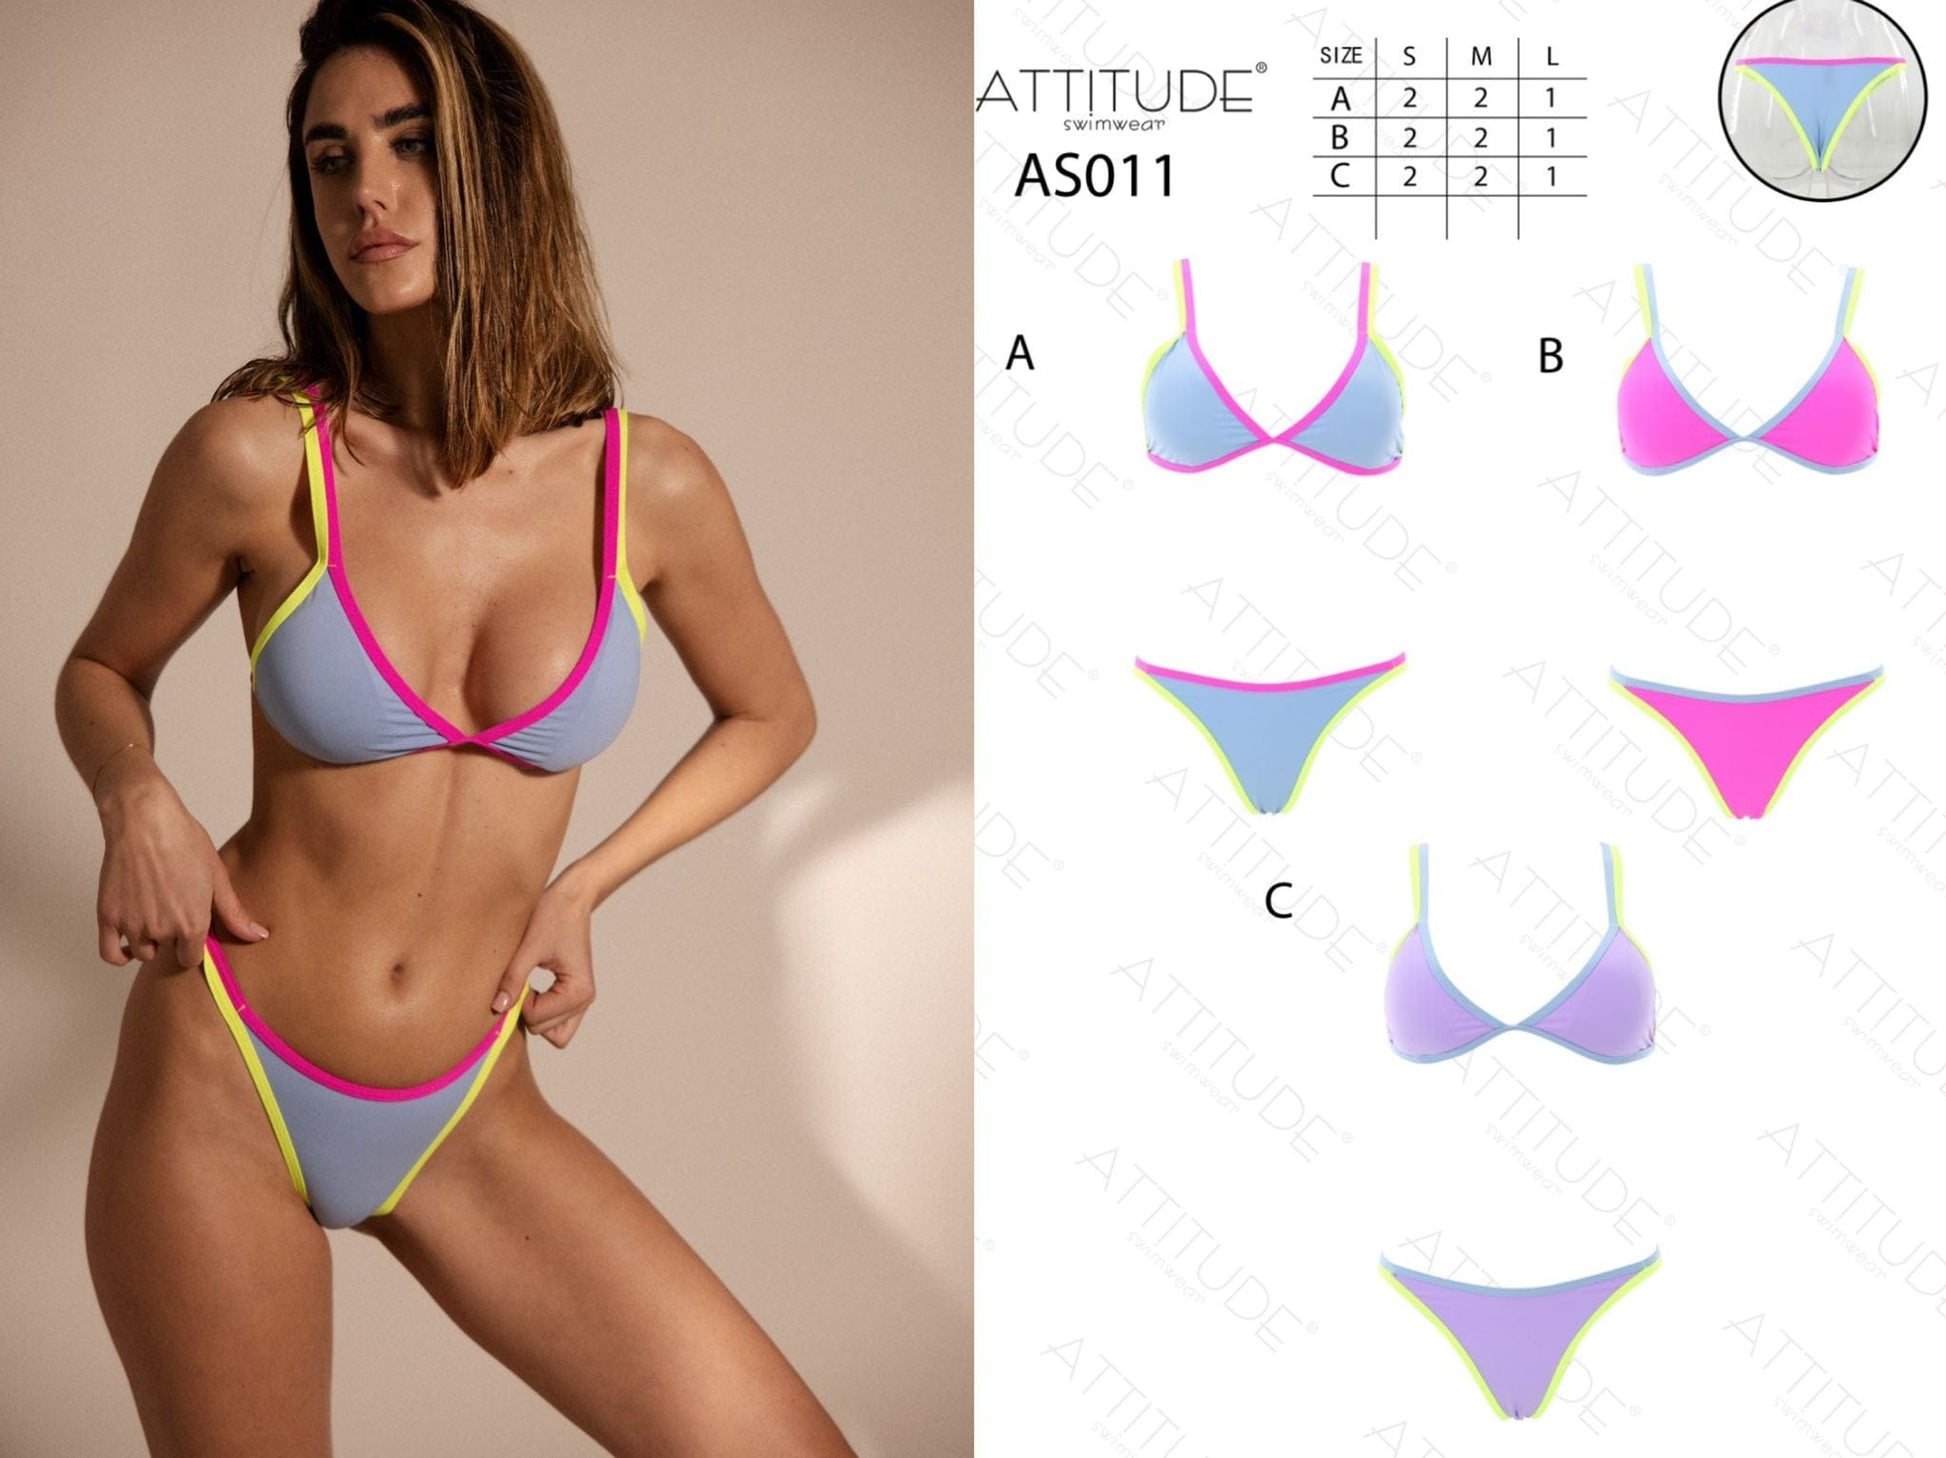 stock costumi donna - €6,00 al pezzo ATTITUDE stock costumi donna bikini 6672 pezzi - RIF. TV3943